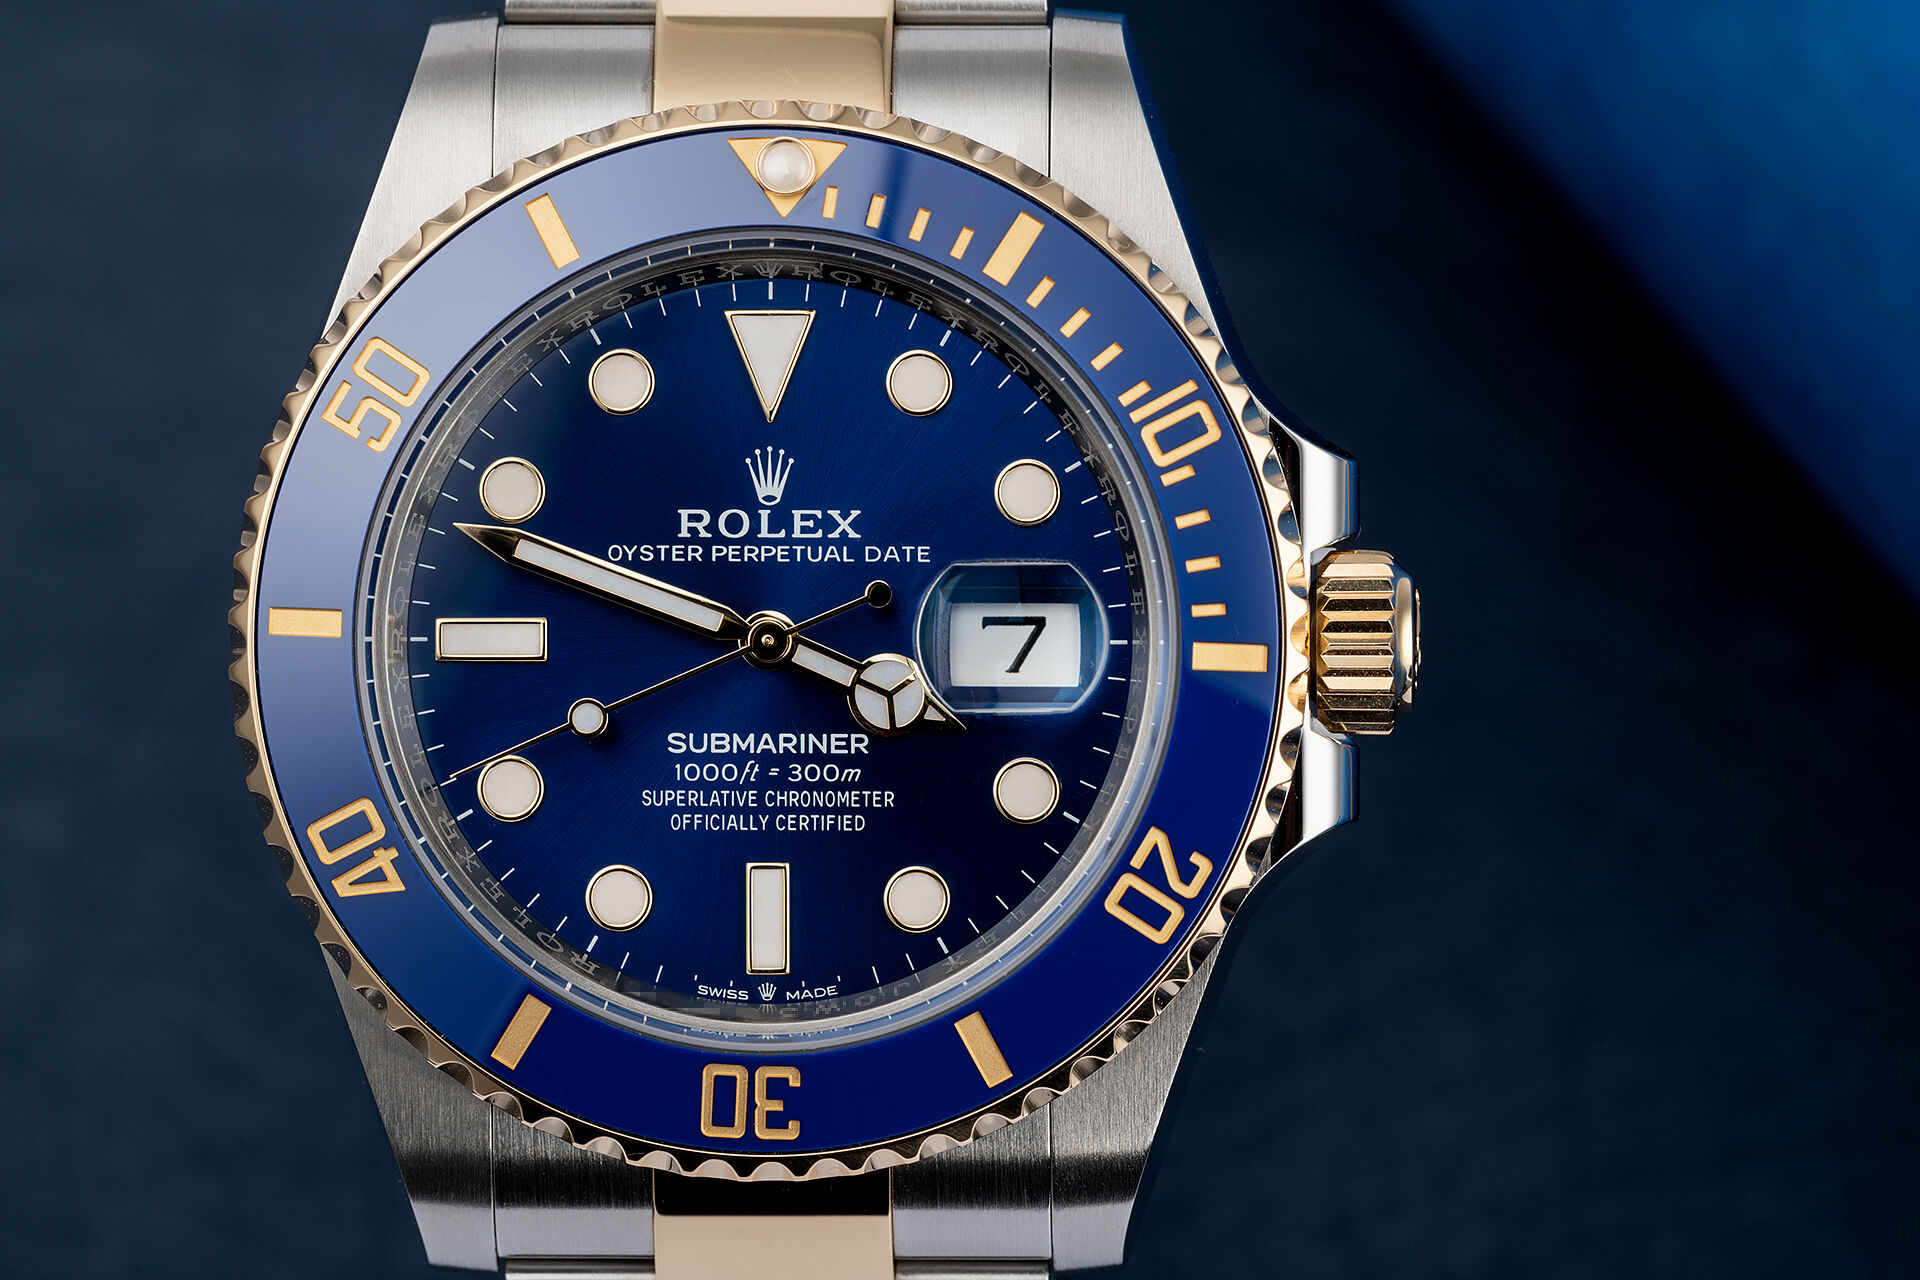 ref 126613LB | Brand New 5 Year Warranty | Rolex Submariner Date